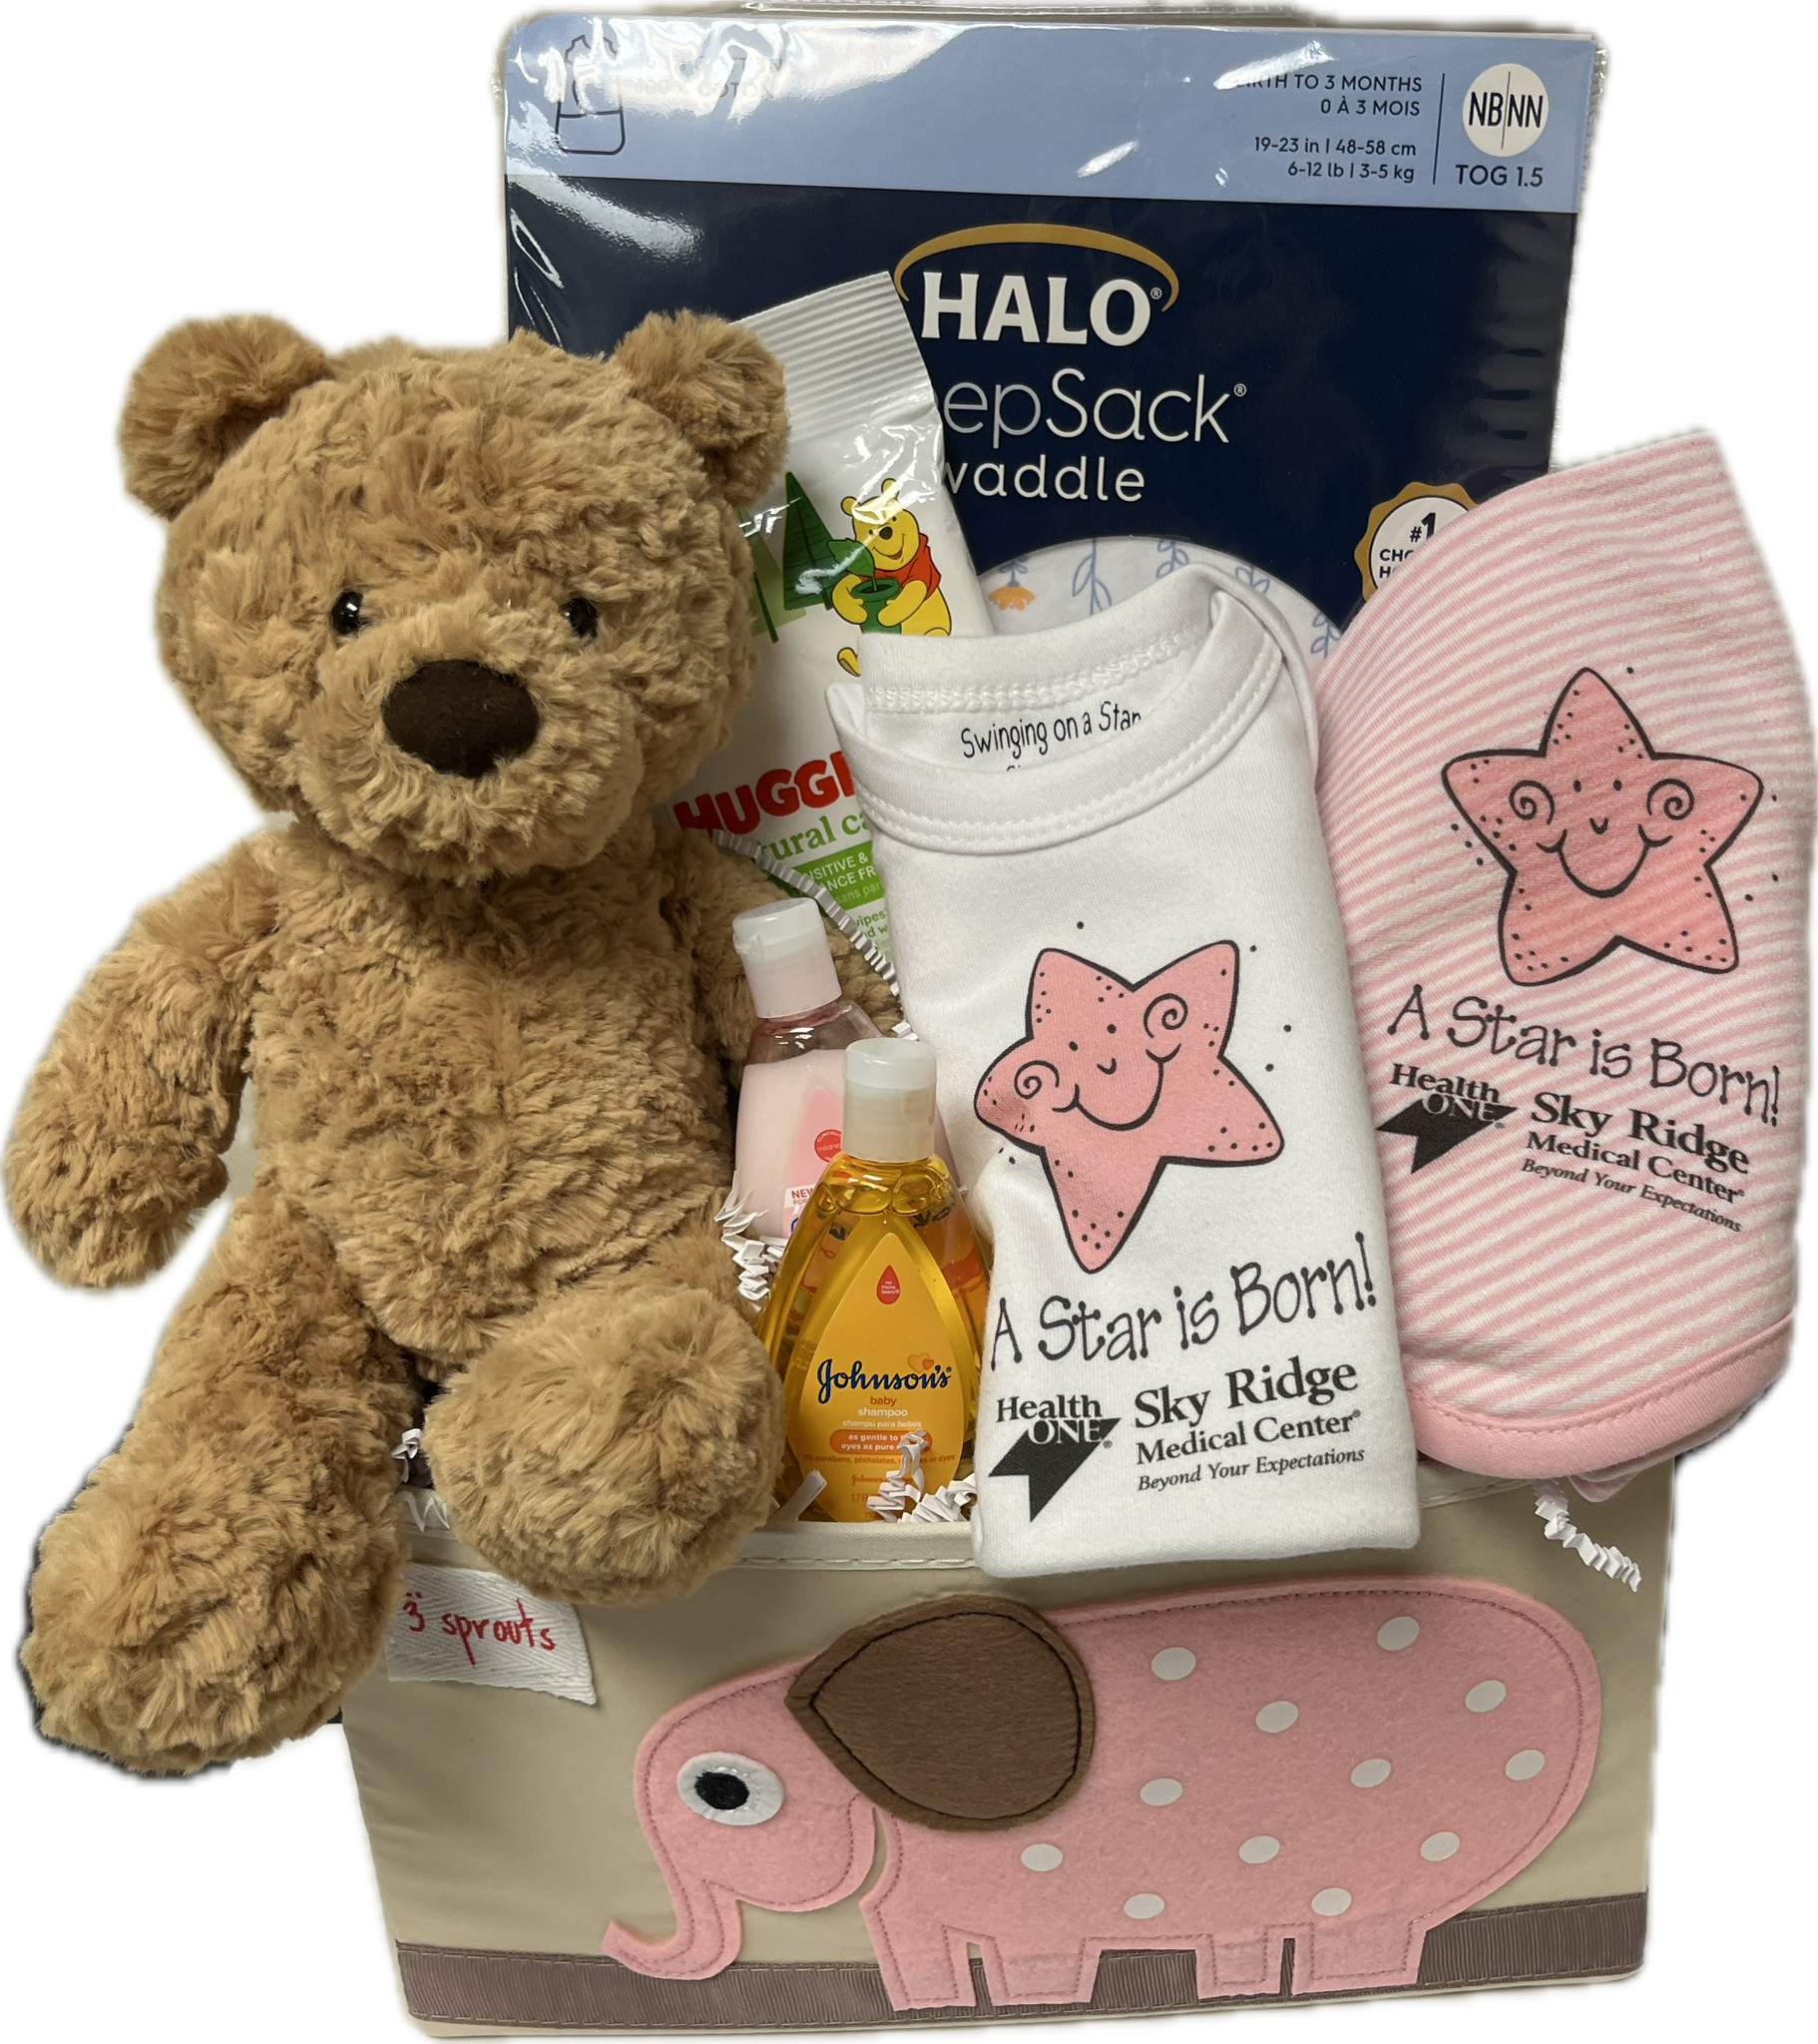 Sky Ridge Baby Girl Gift Set